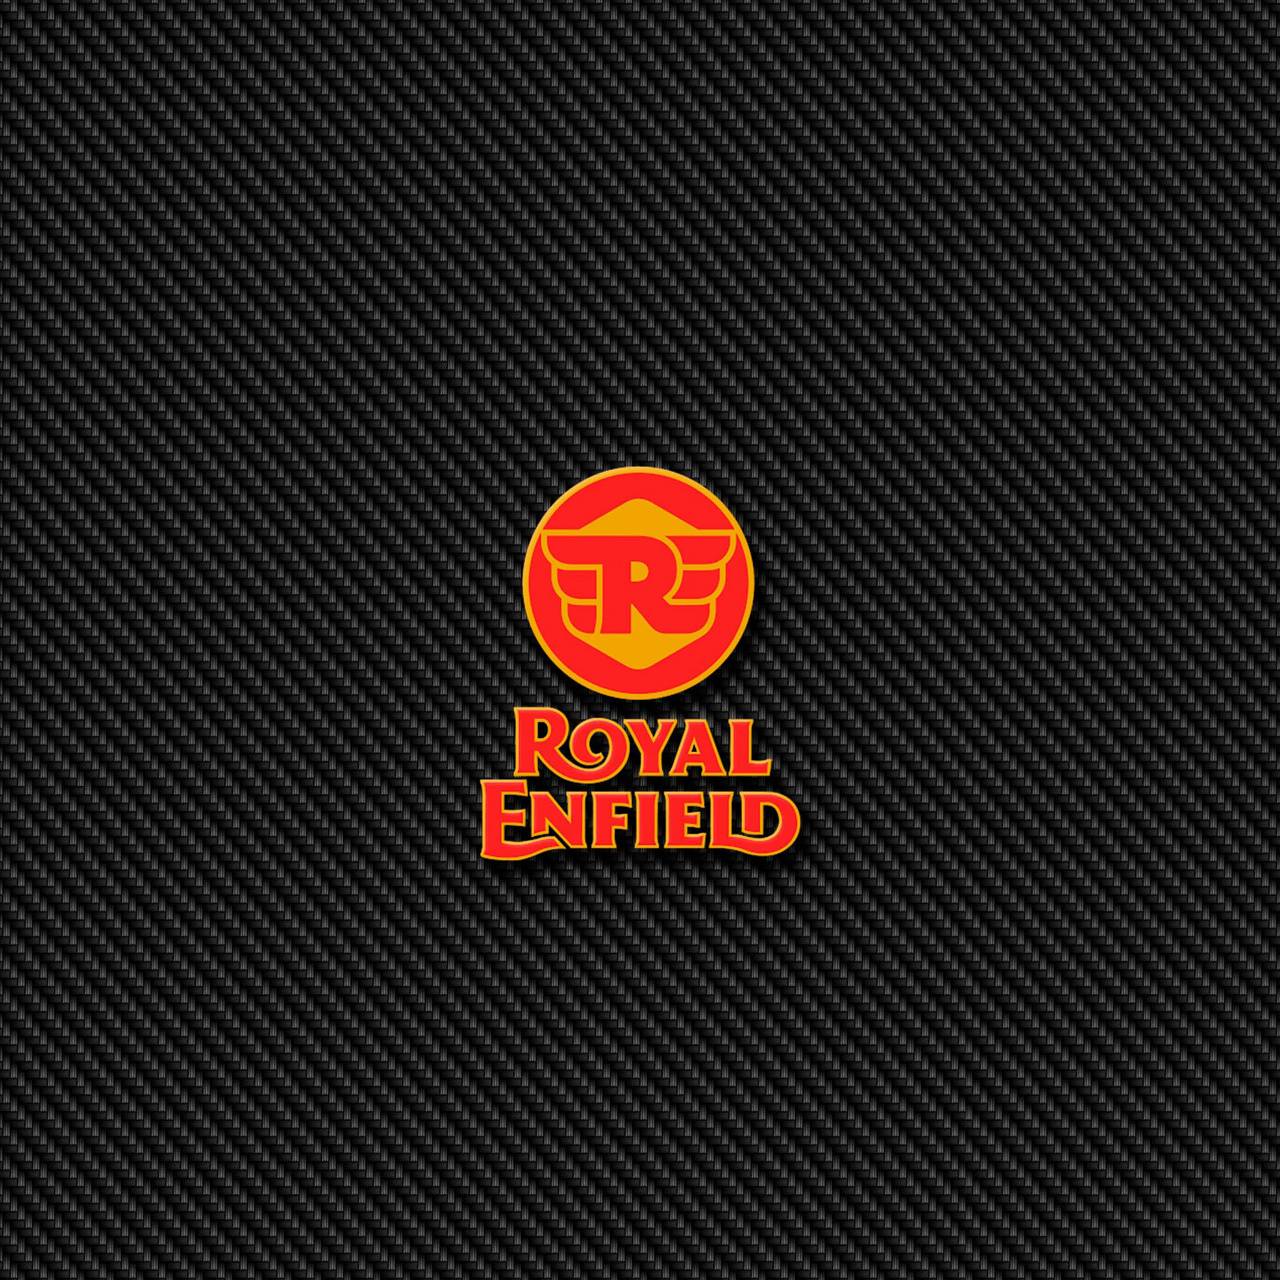 Royal Enfield Logo Wallpaper Hd